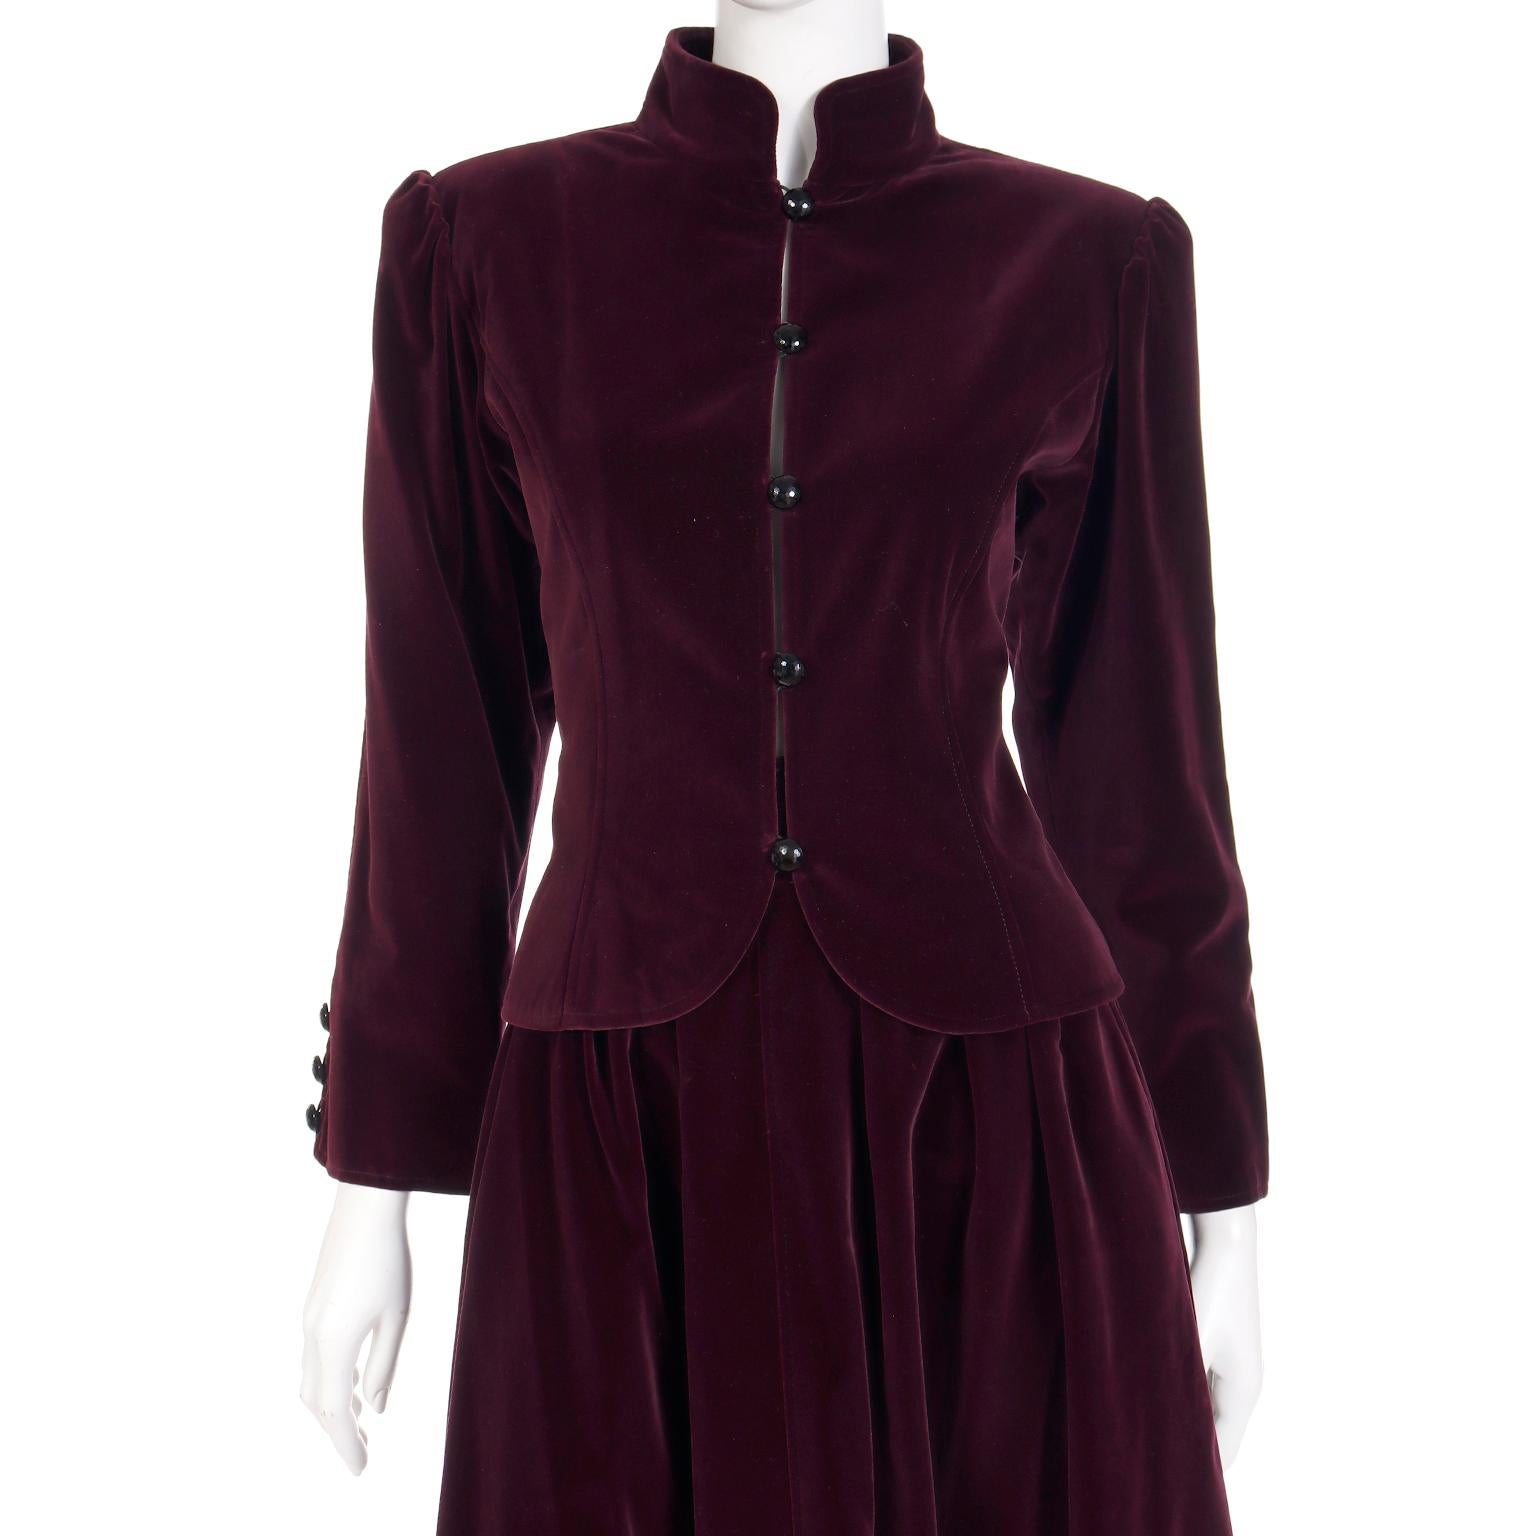 Yves Saint Laurent Burgundy Velvet Jacket & Skirt 2 Piece Suit  For Sale 1